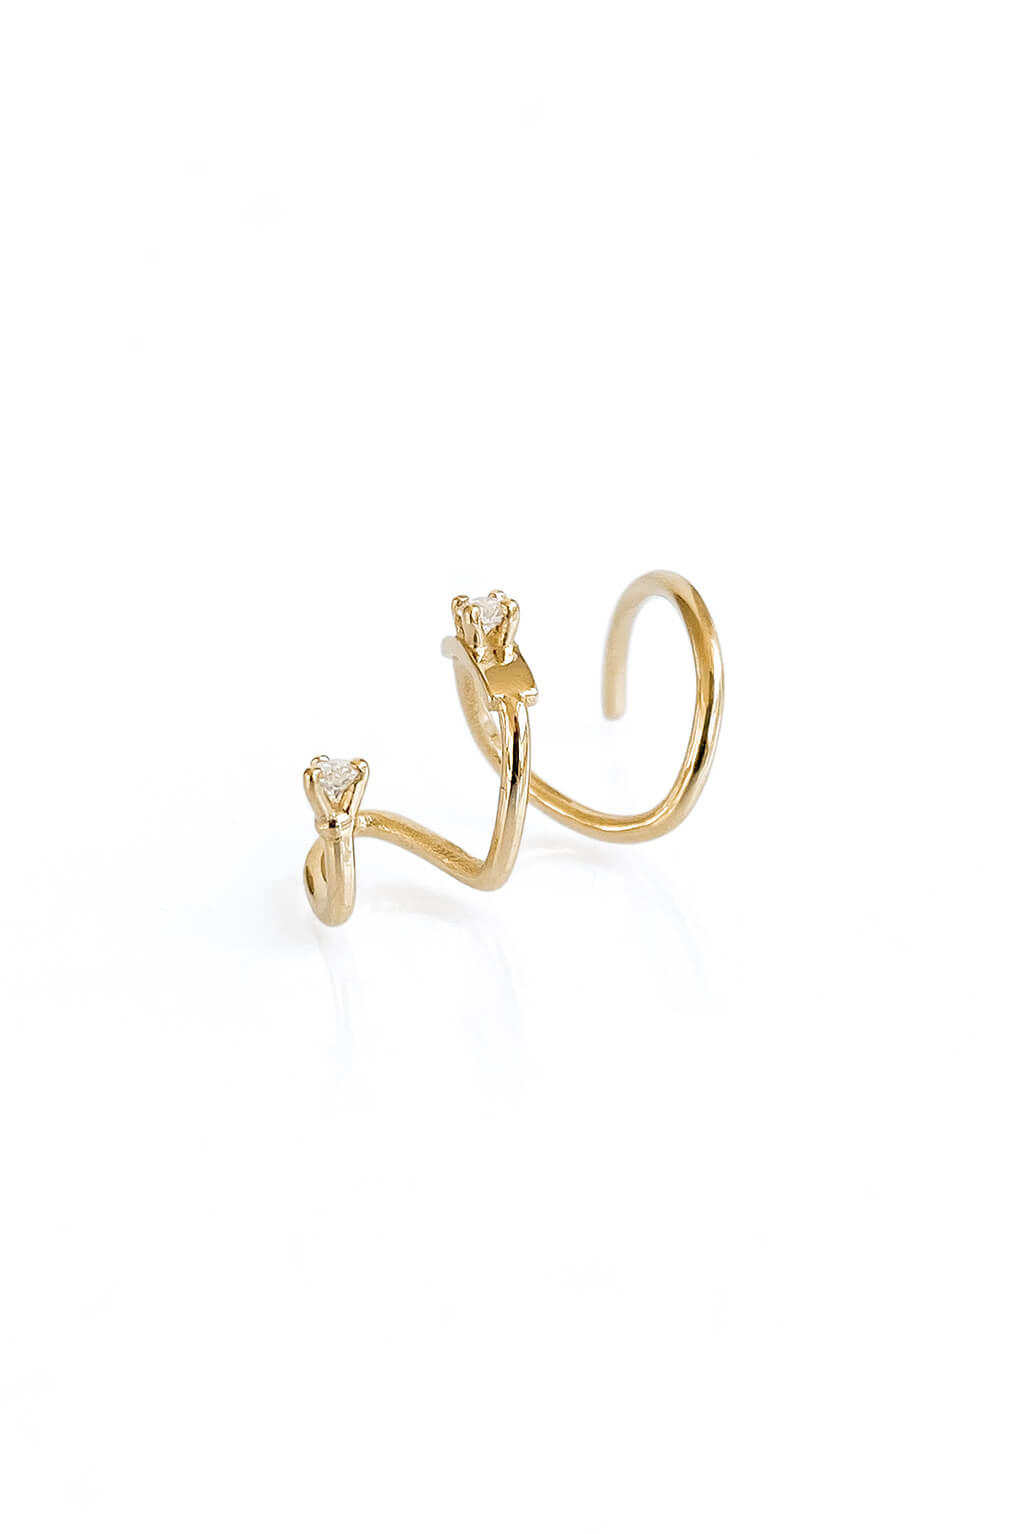 Long Snake diamonds gold earring